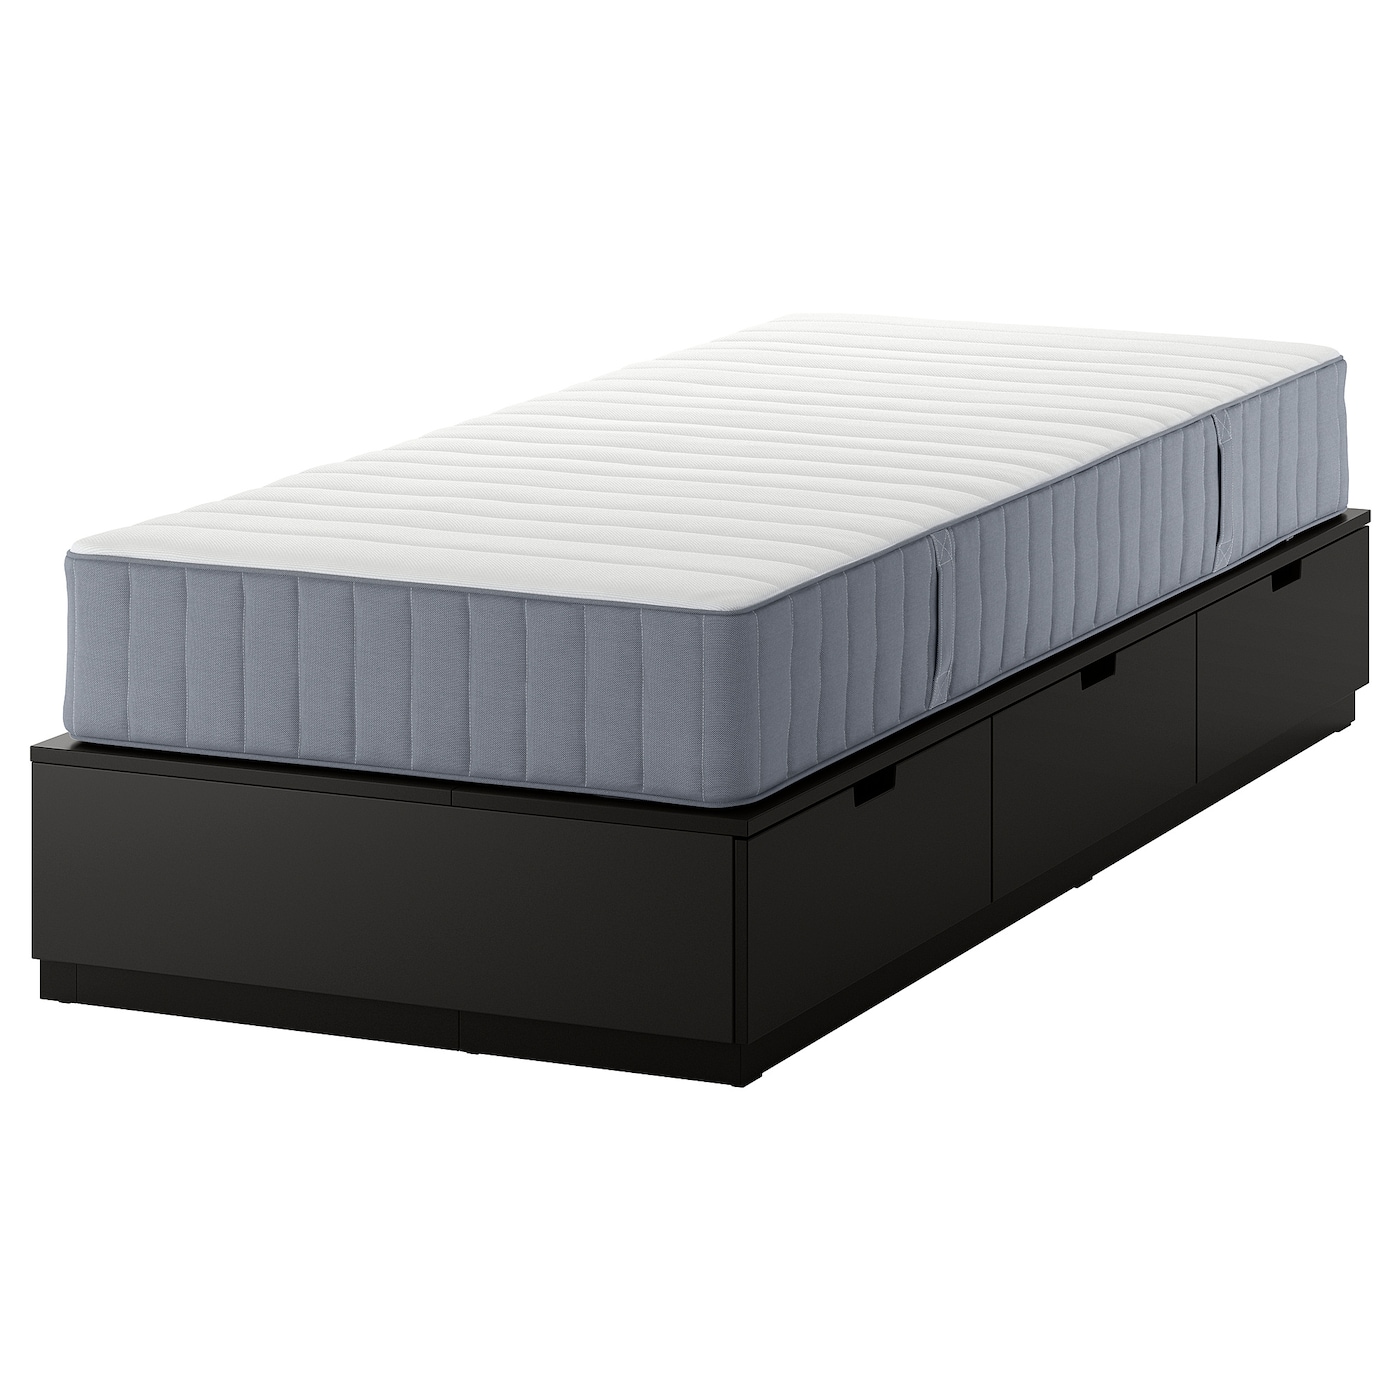 Каркас кровати с местом для хранения и матрасом - IKEA NORDLI, 200х90 см, матрас жесткий, черный, НОРДЛИ ИКЕА